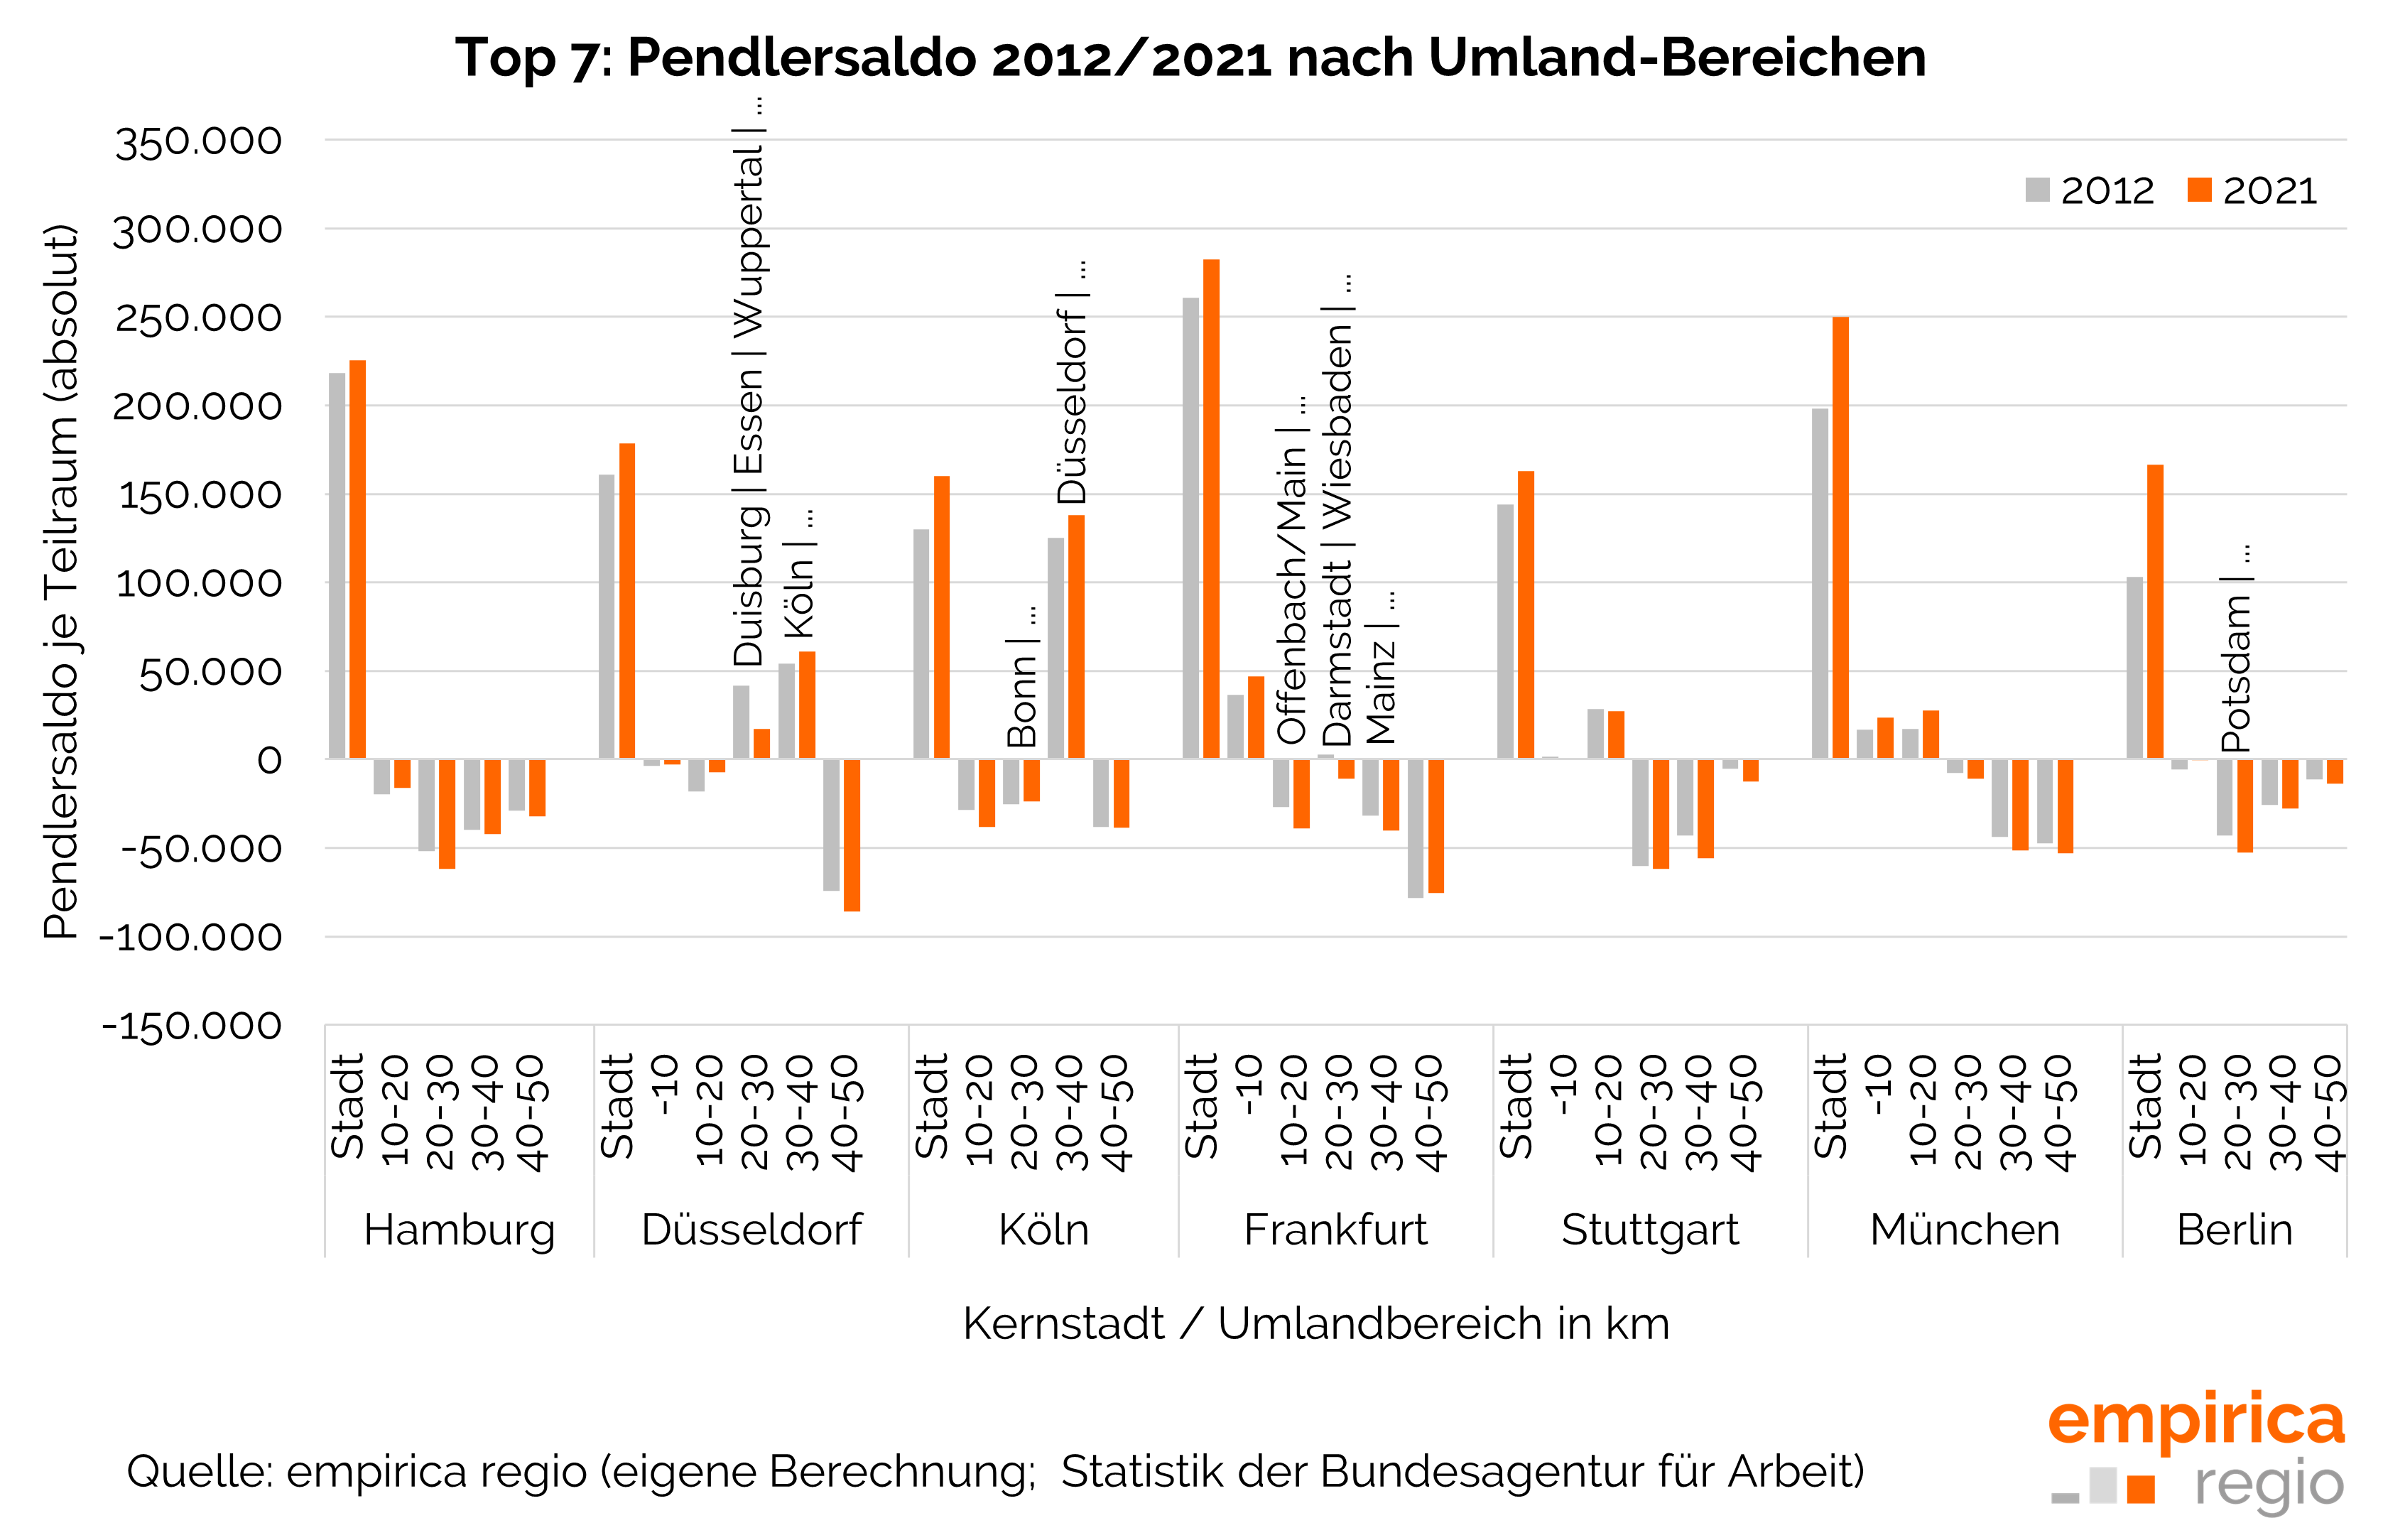 Top 7: Pendlersaldo 2012 und 2021 nach Umland-Bereichen im Vergleich